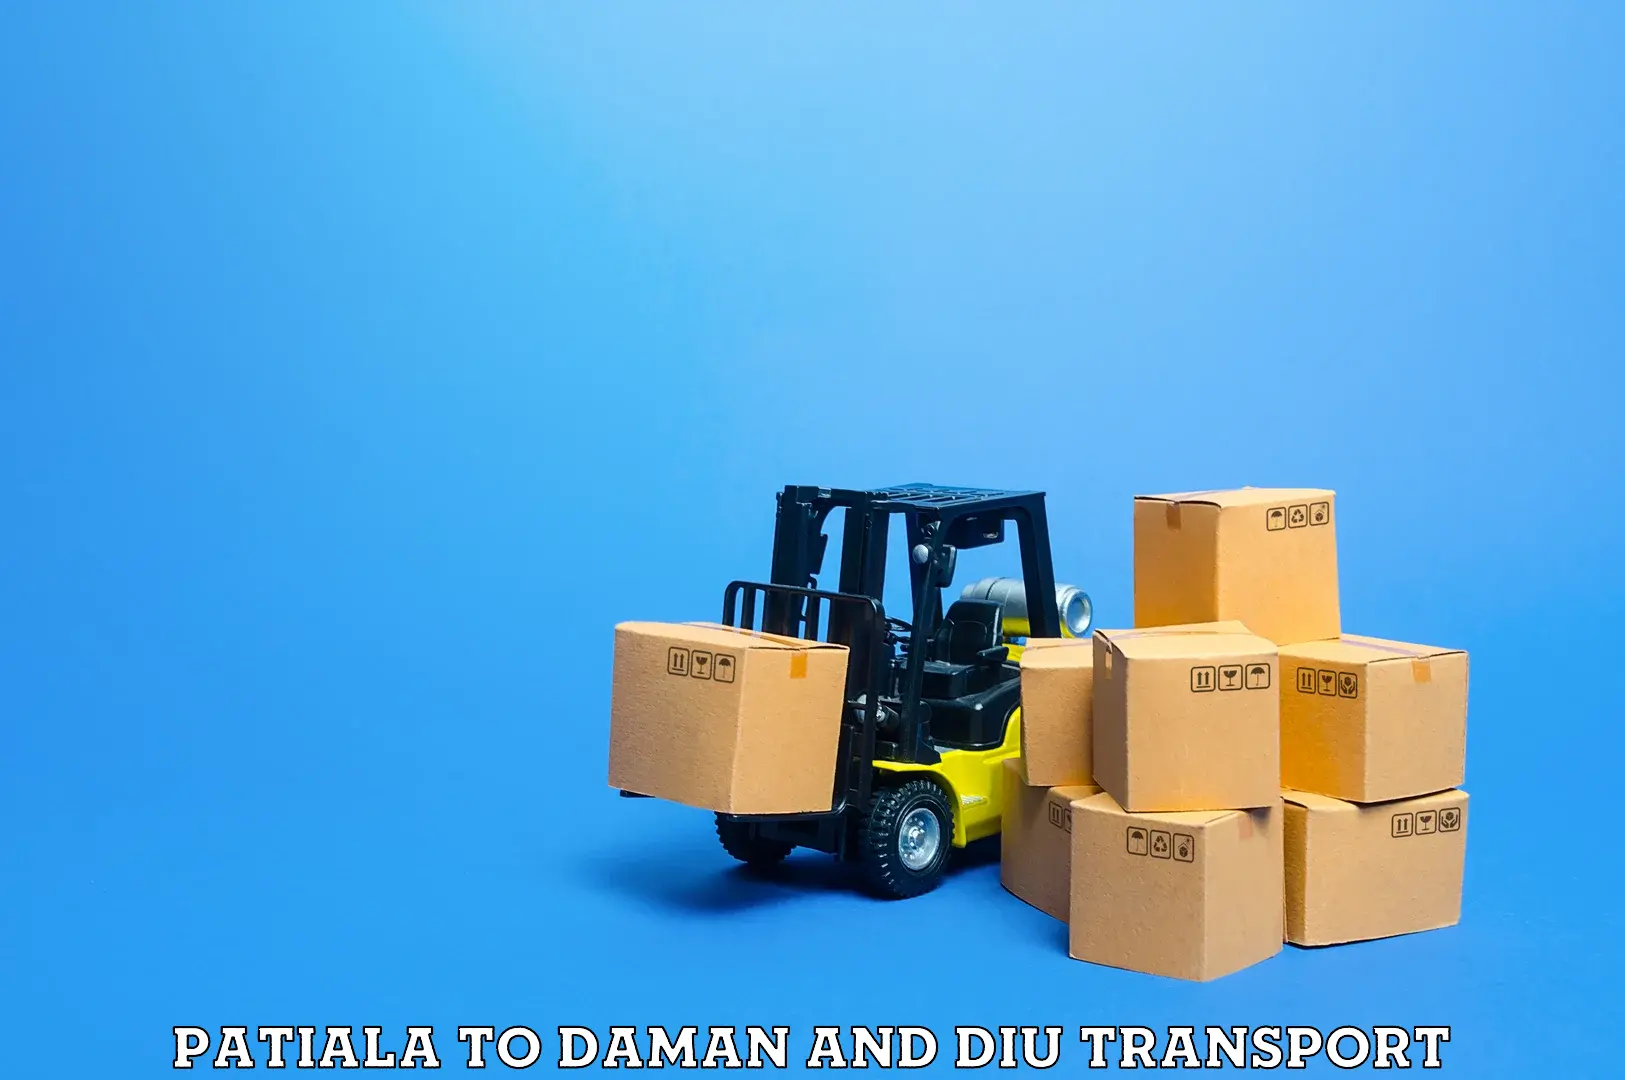 Bike shipping service Patiala to Daman and Diu